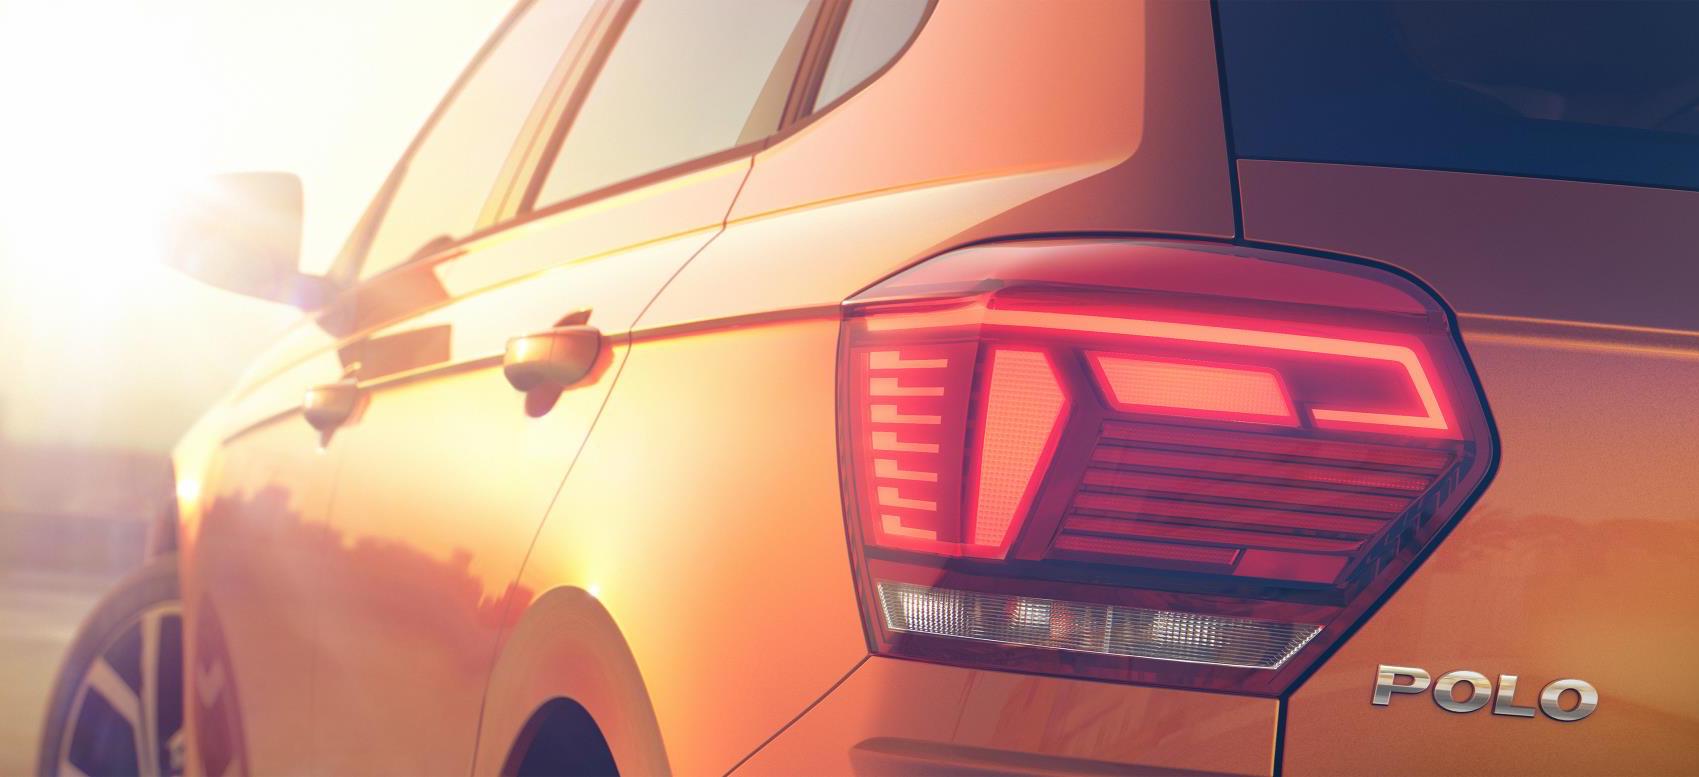 2018 Volkswagen Polo previewed, June 16 debut confirmed